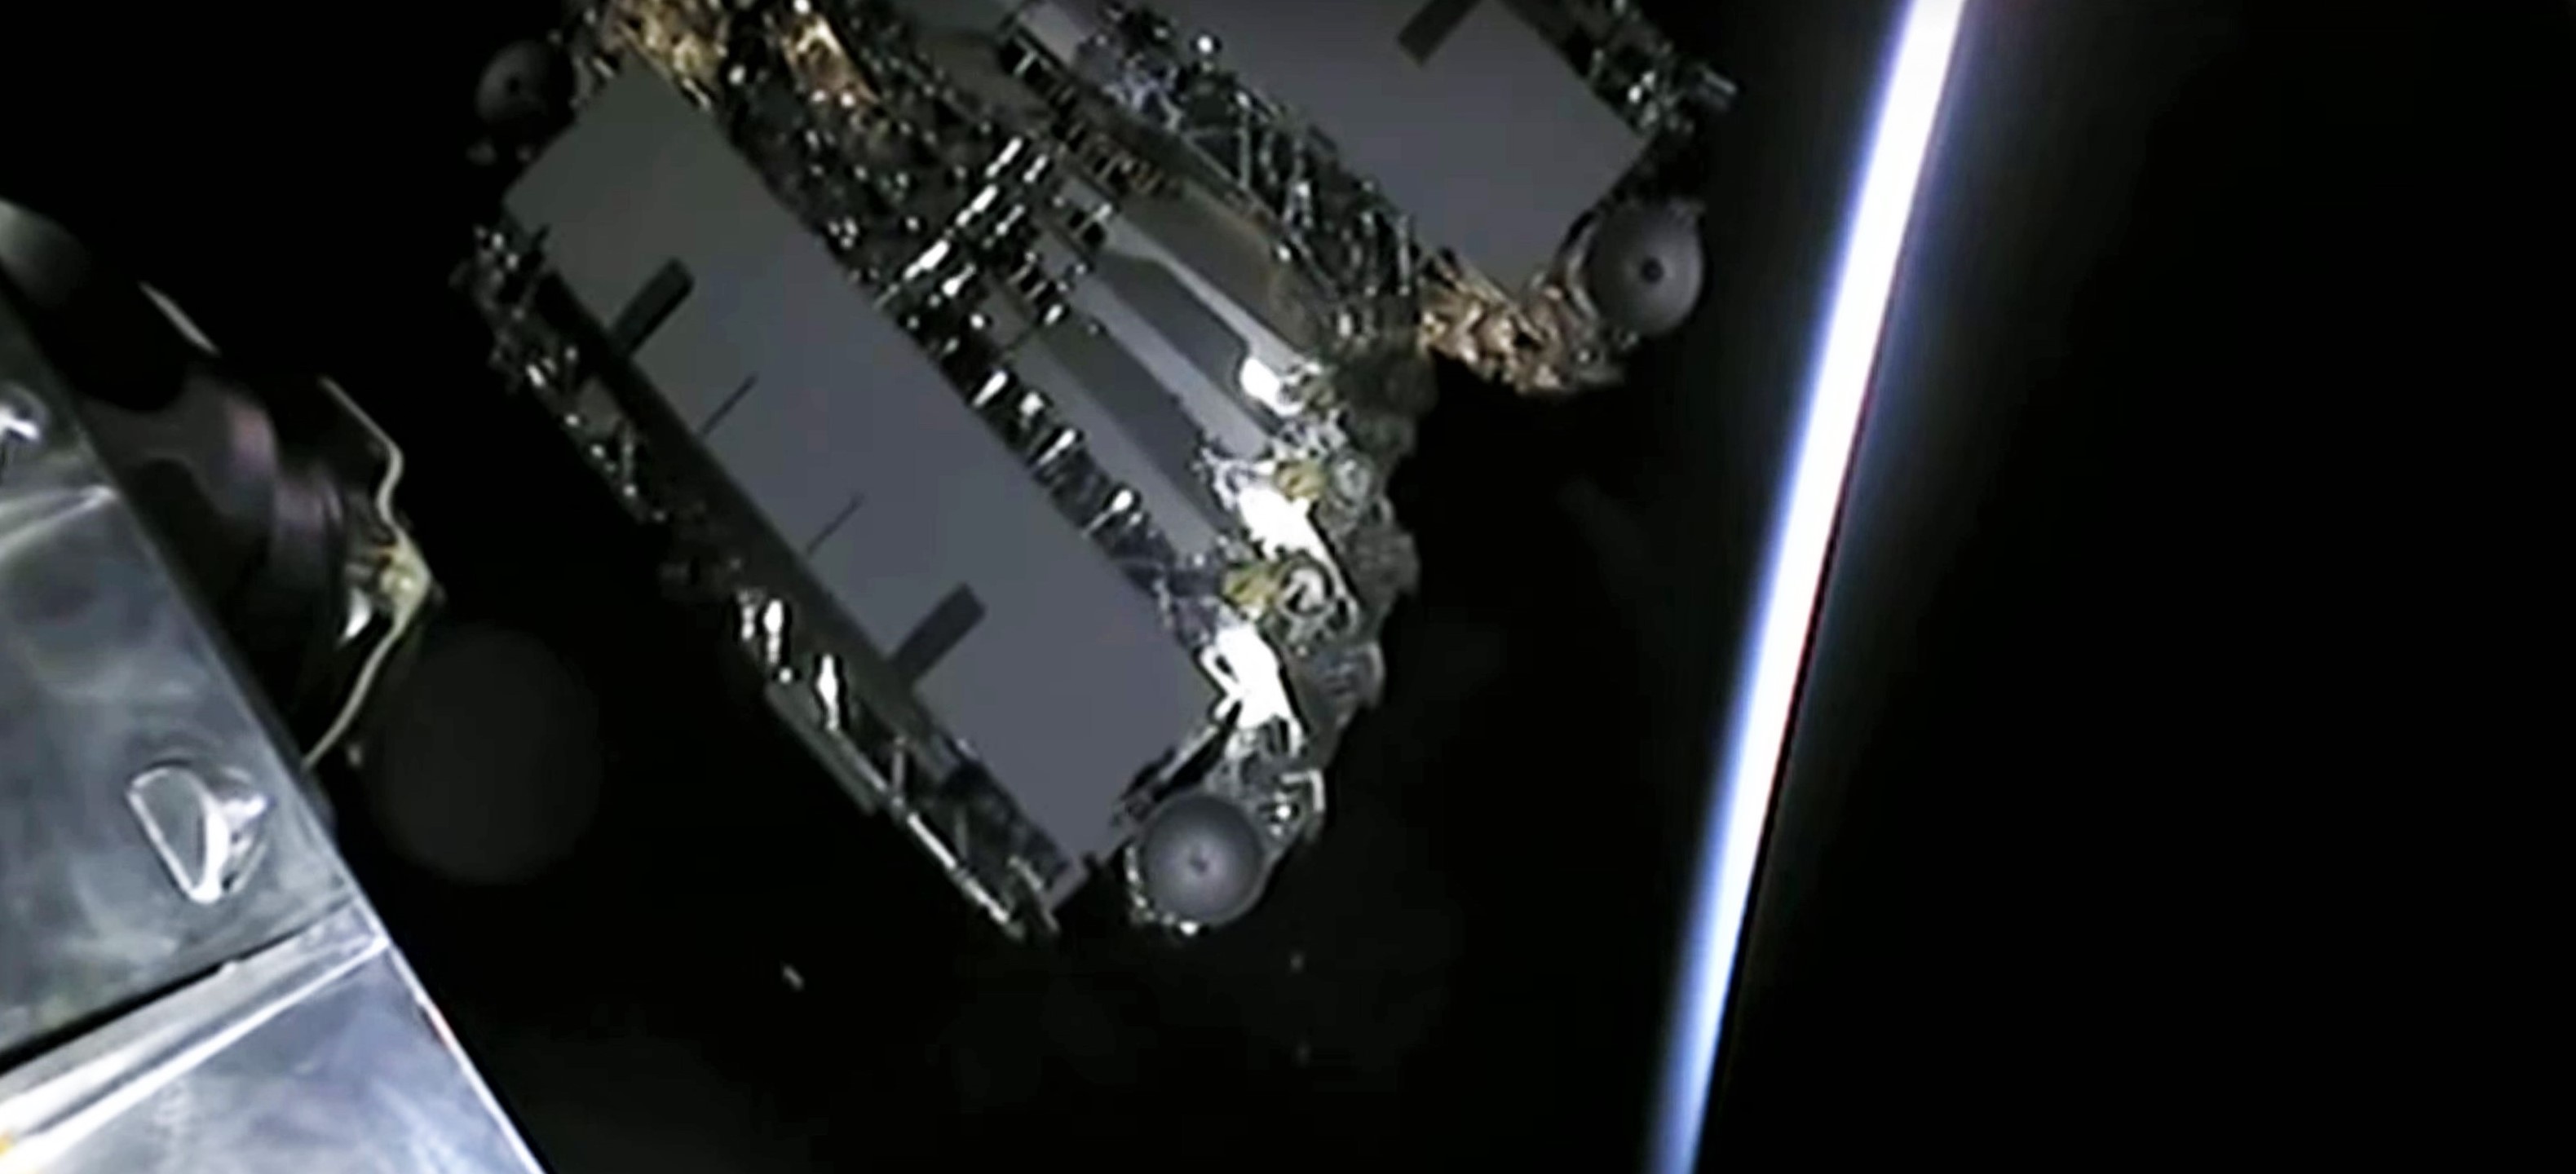 Starlink-1 v1.0 satellite deployment in orbit (SpaceX) 1